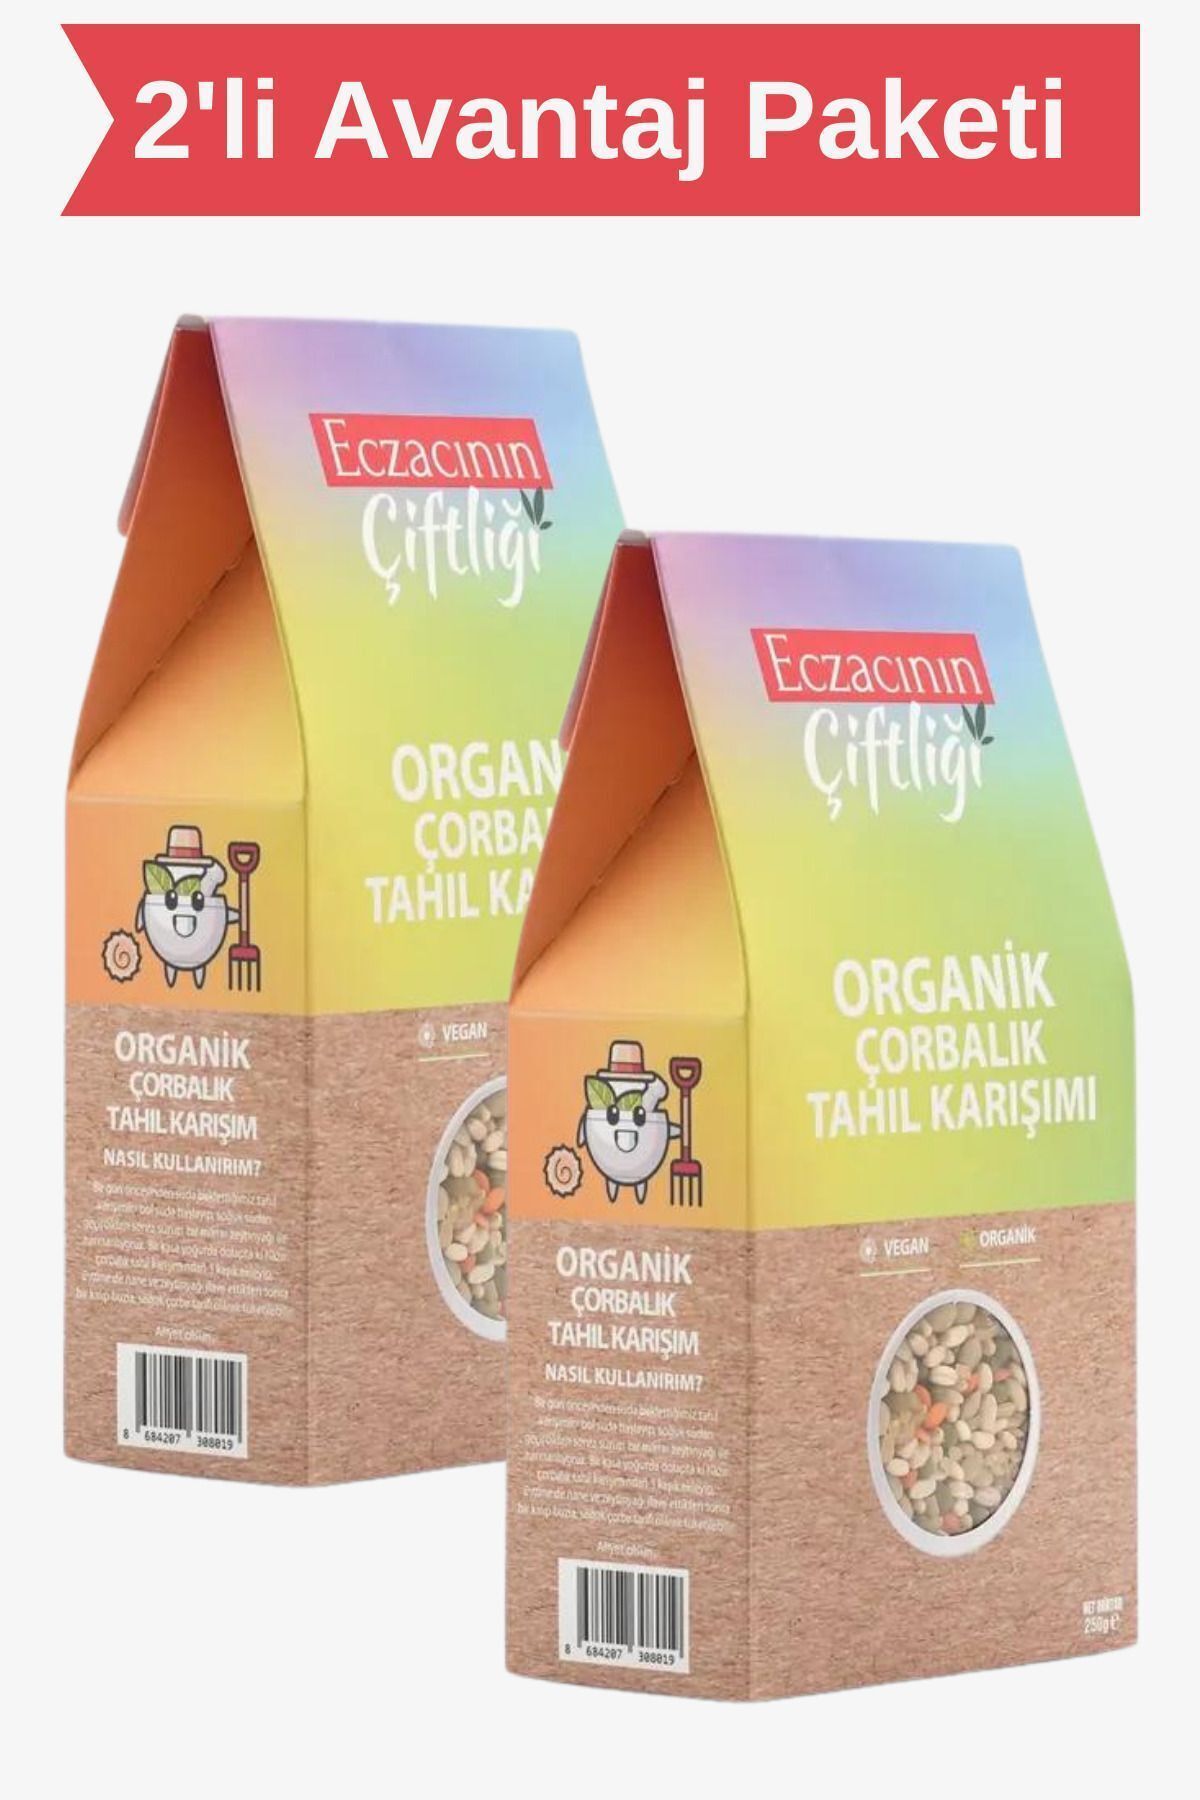 Eczacının Çiftliği Organik Çorbalık Tahıl Karışımı 250 gr X 2 Adet / Organik Sertifikalı Vegan Sağlıklı Ve Lezzetli